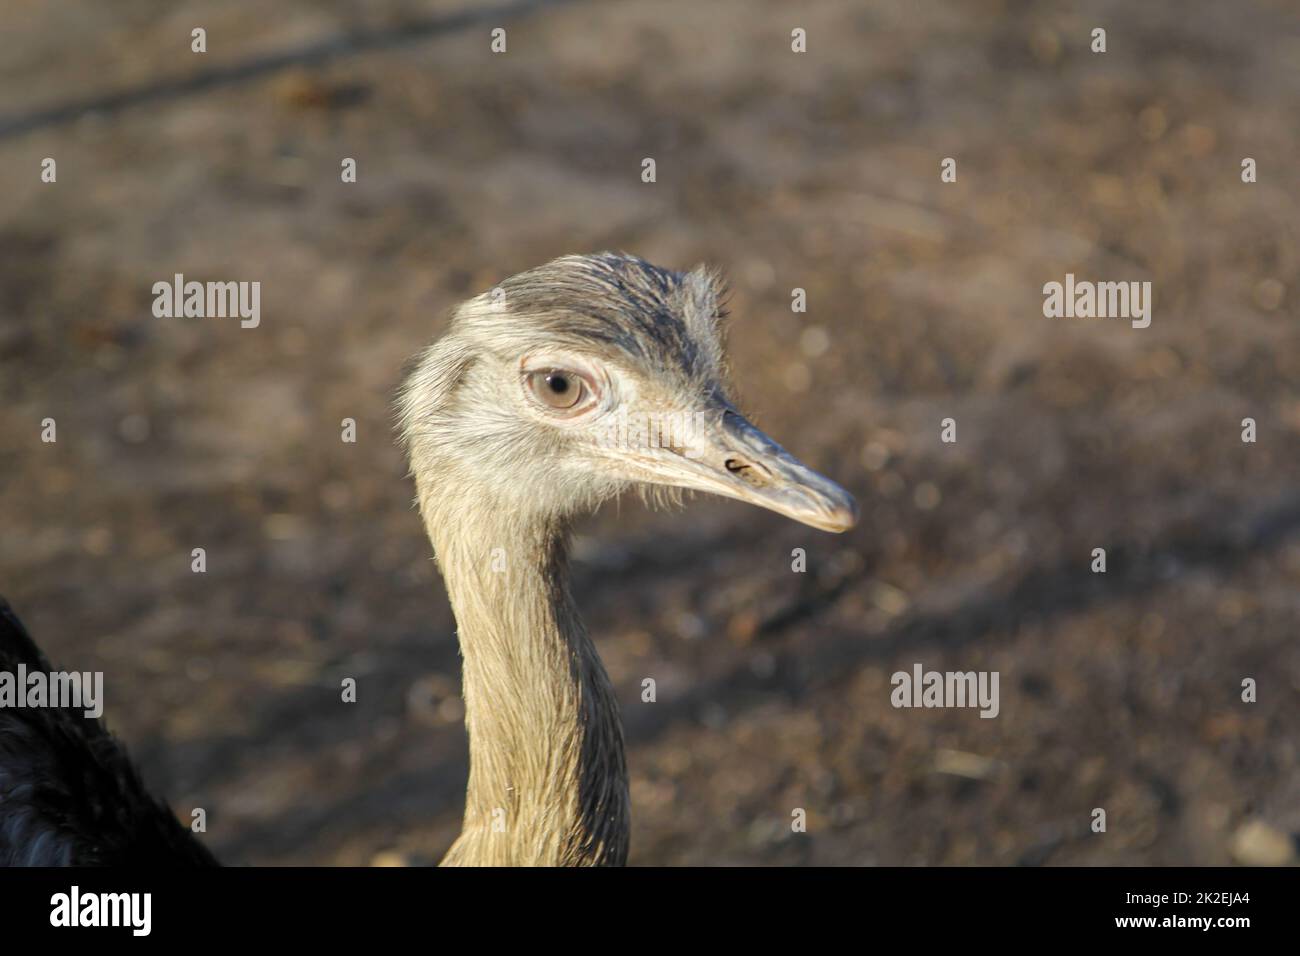 Portrait of a Nandu, a flightless bird. Stock Photo